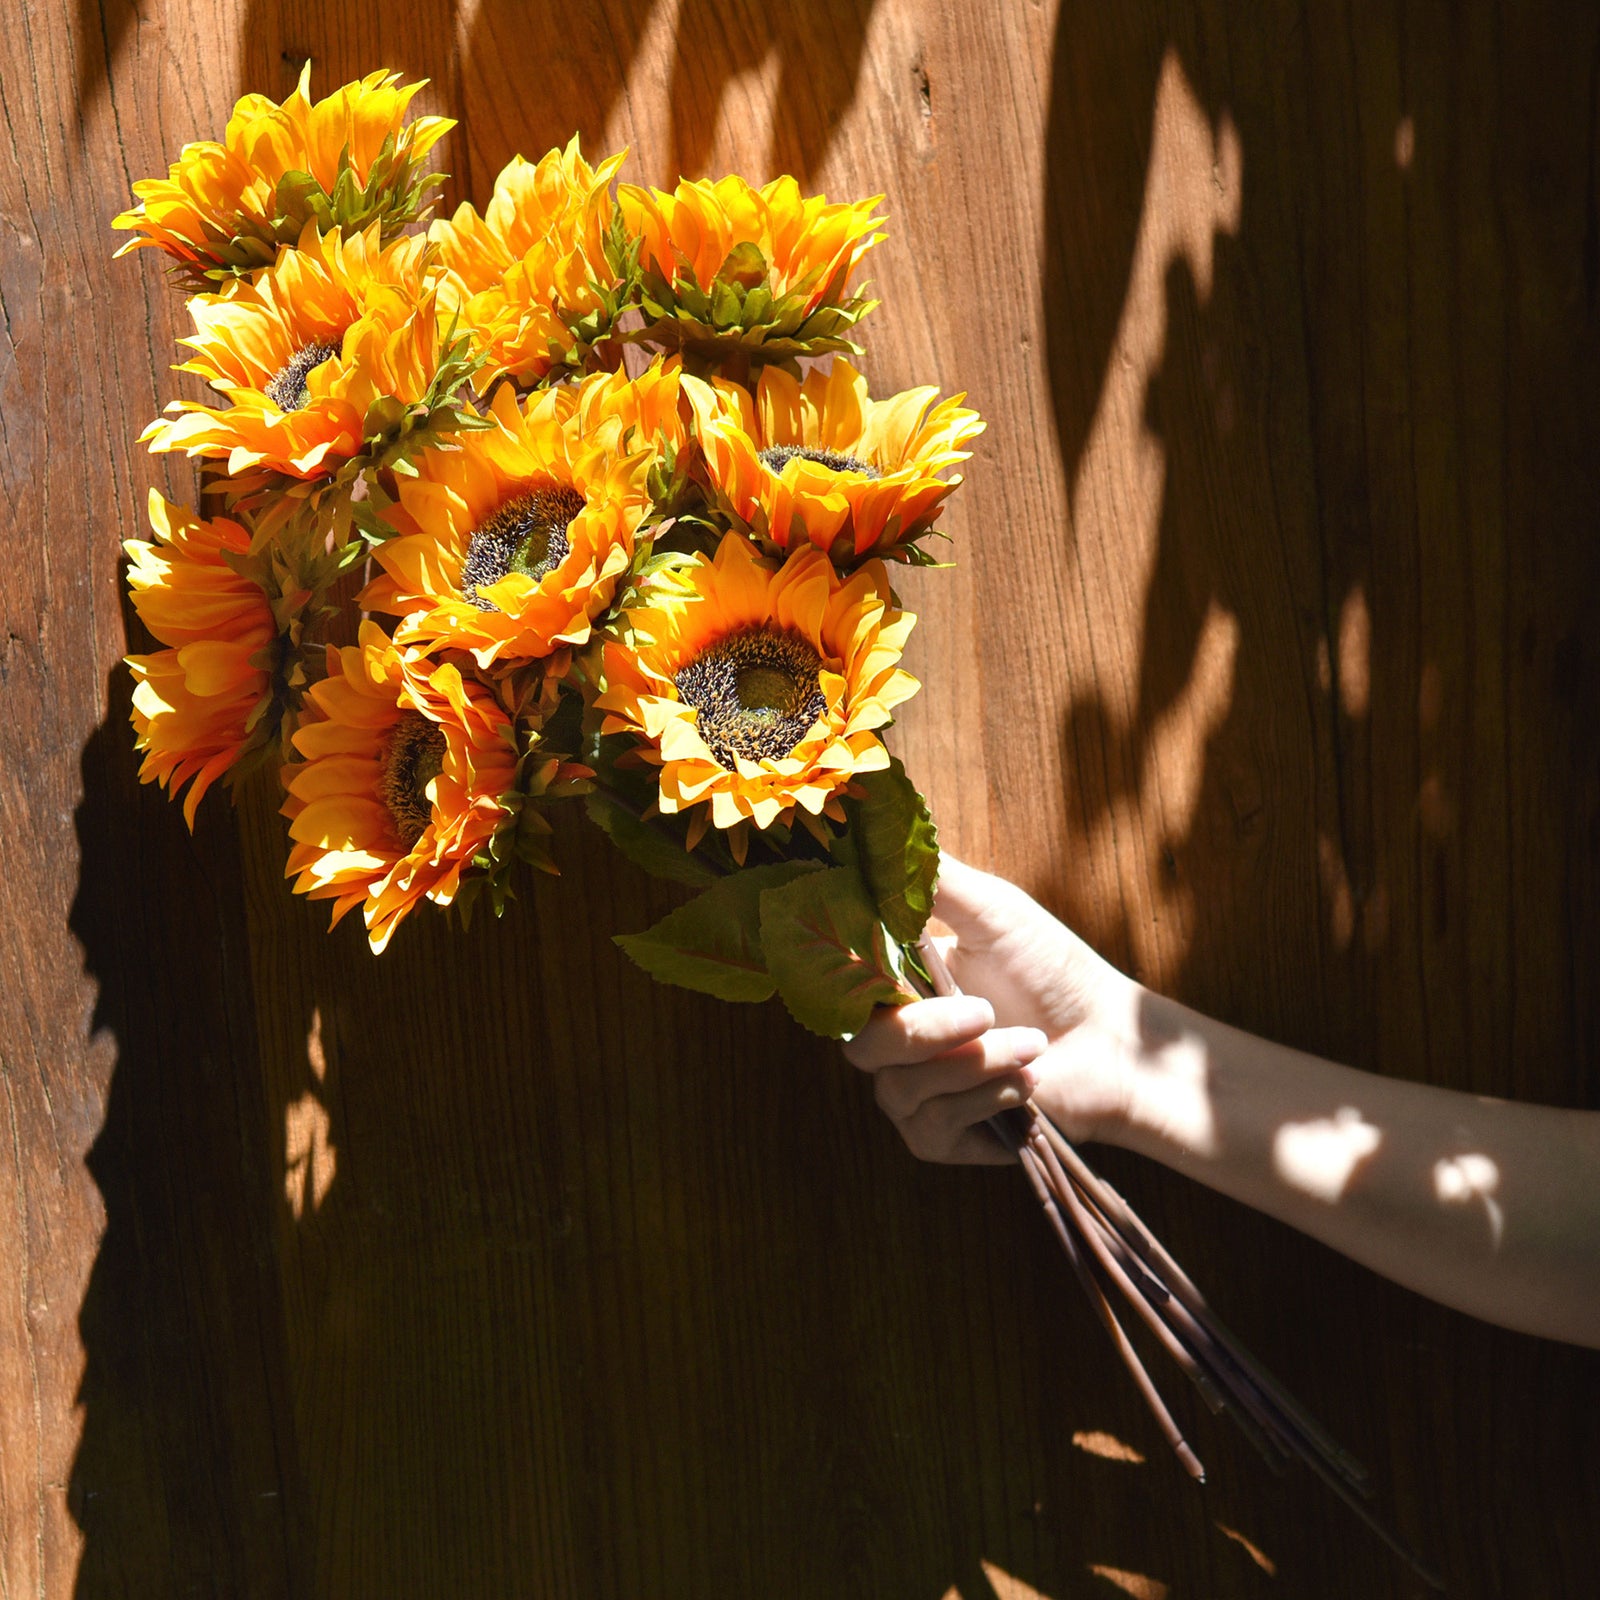 FiveSeasonStuff Artificial Sunflowers, Yellow Silk Flowers Bouquet (10 Single Stems)